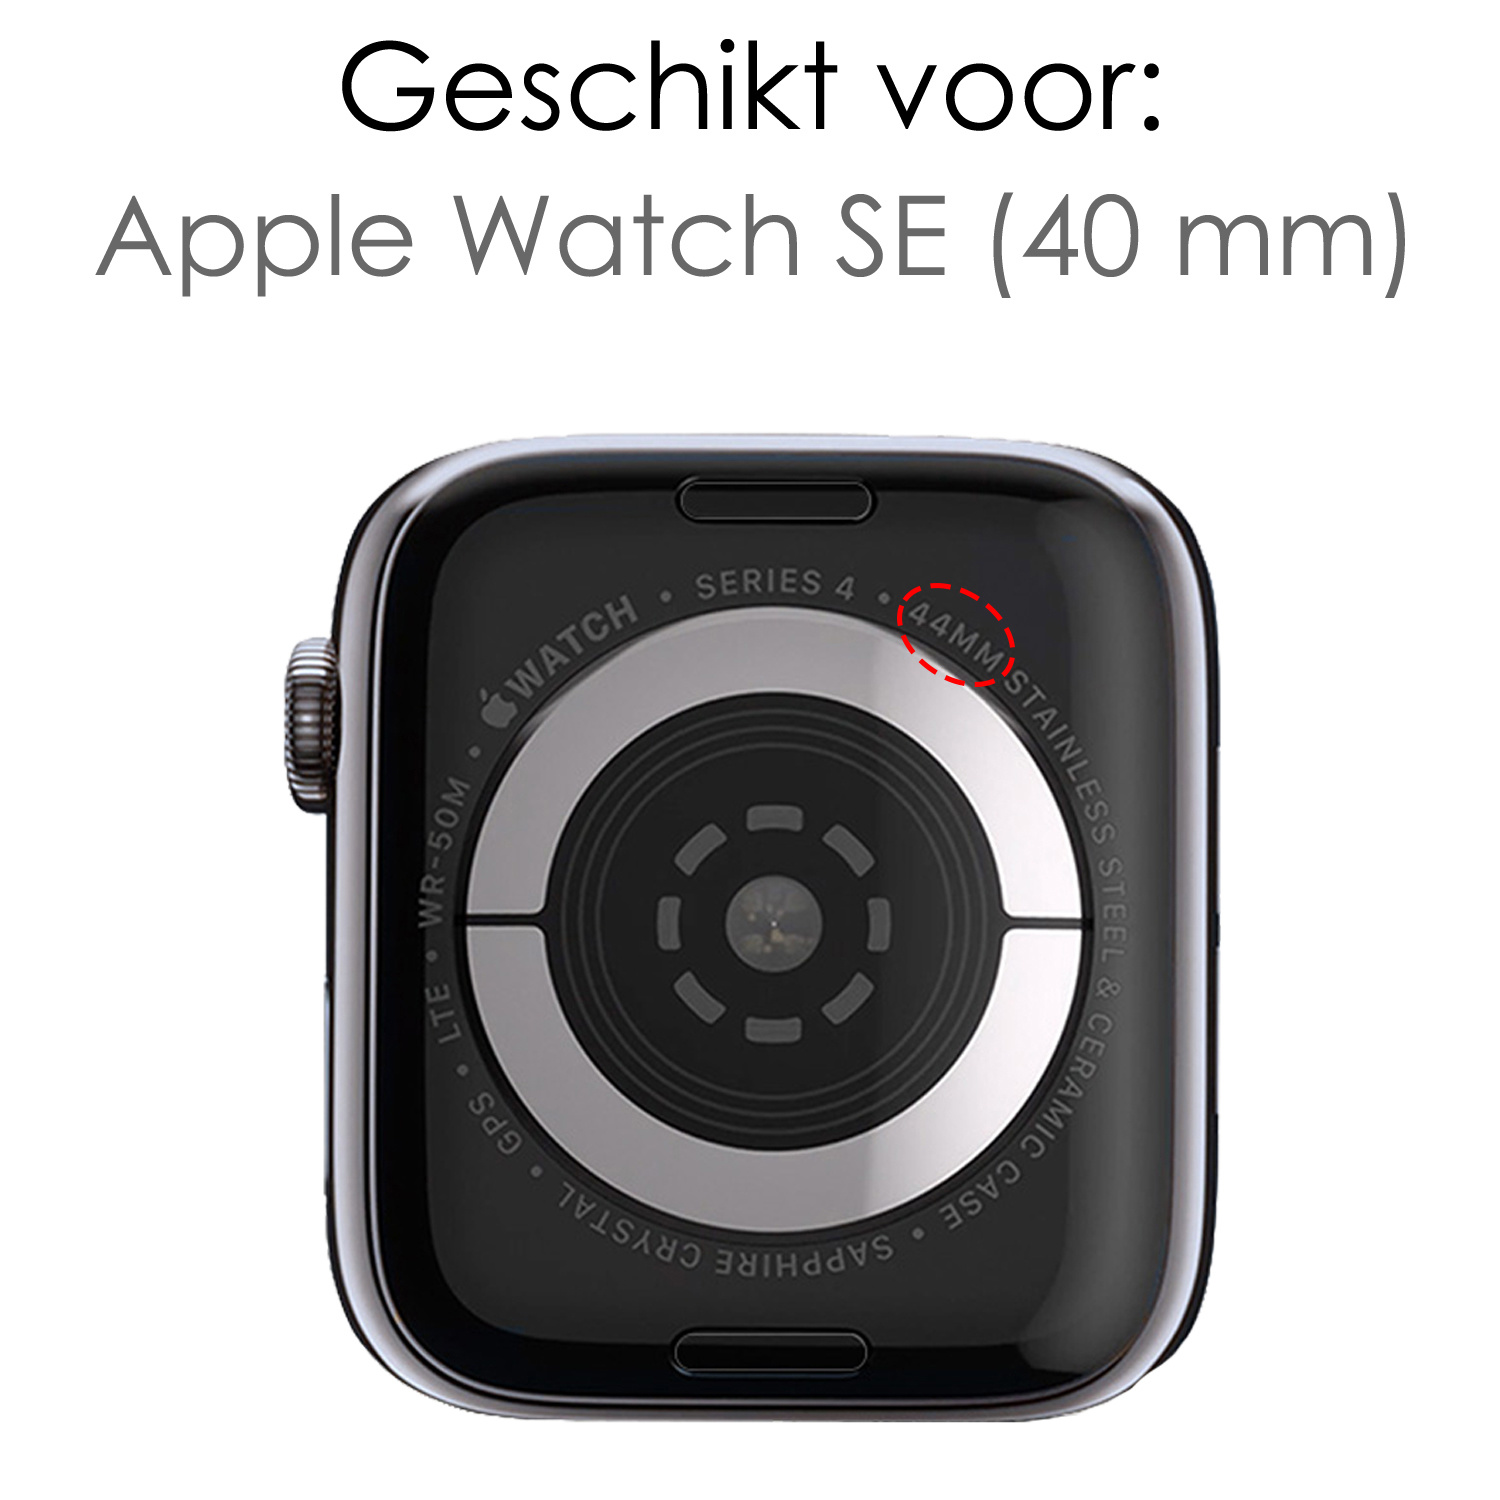 NoXx Horlogeband Milanees Geschikt voor Apple Watch SE 40 mm Bandje - Bandje Geschikt voor Apple Watch SE 40 mm Band Milanees - Zwart